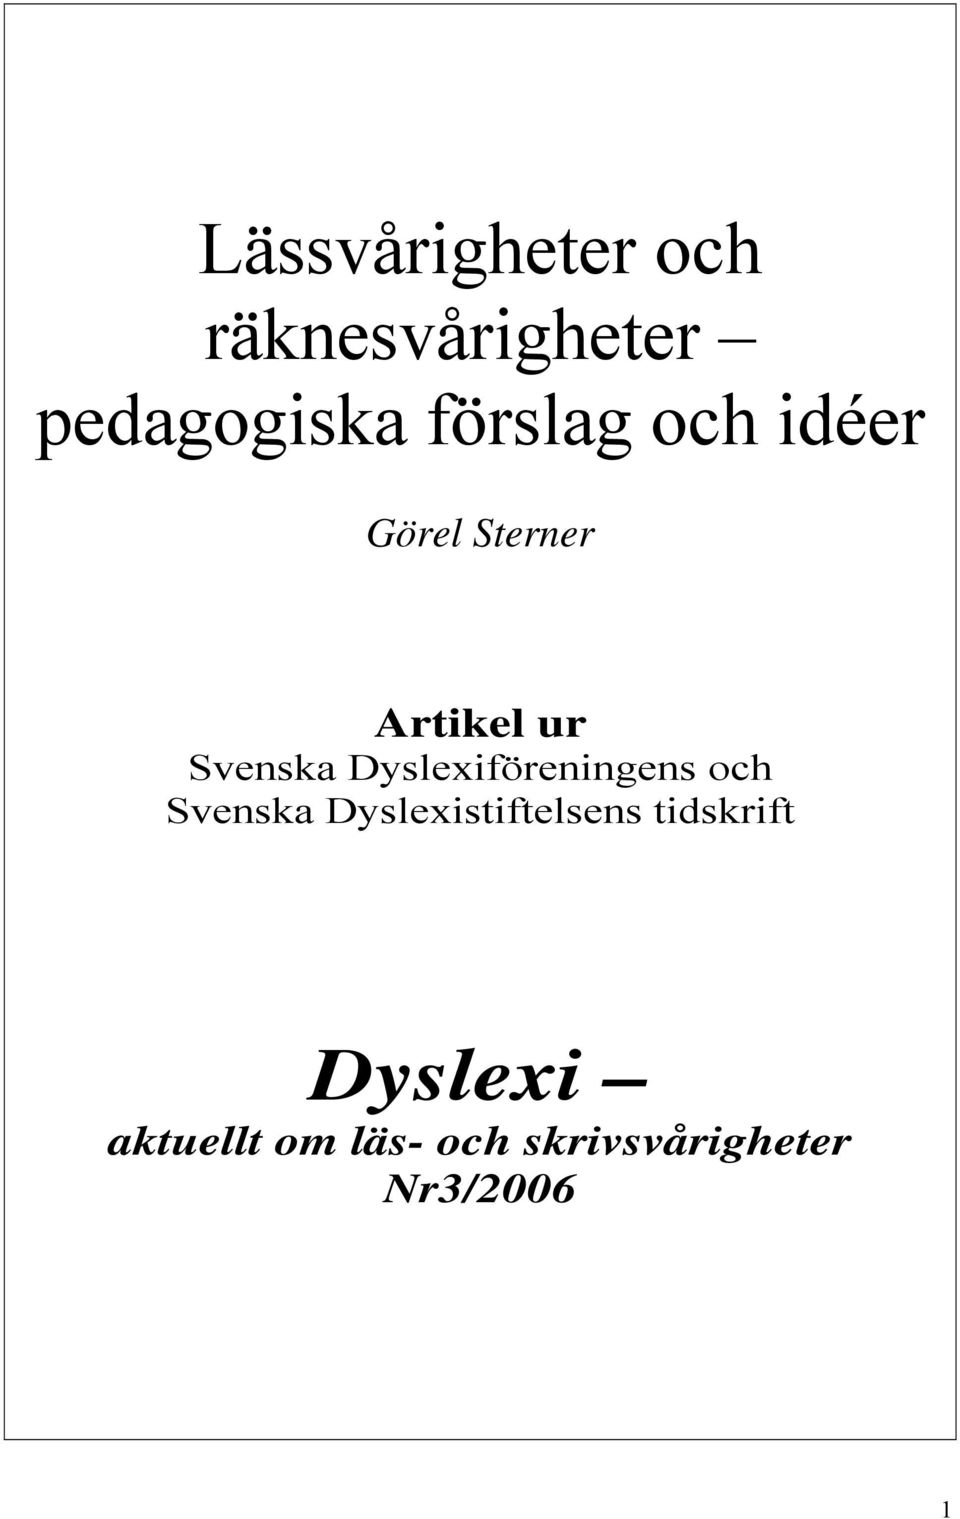 Dyslexiföreningens och Svenska Dyslexistiftelsens